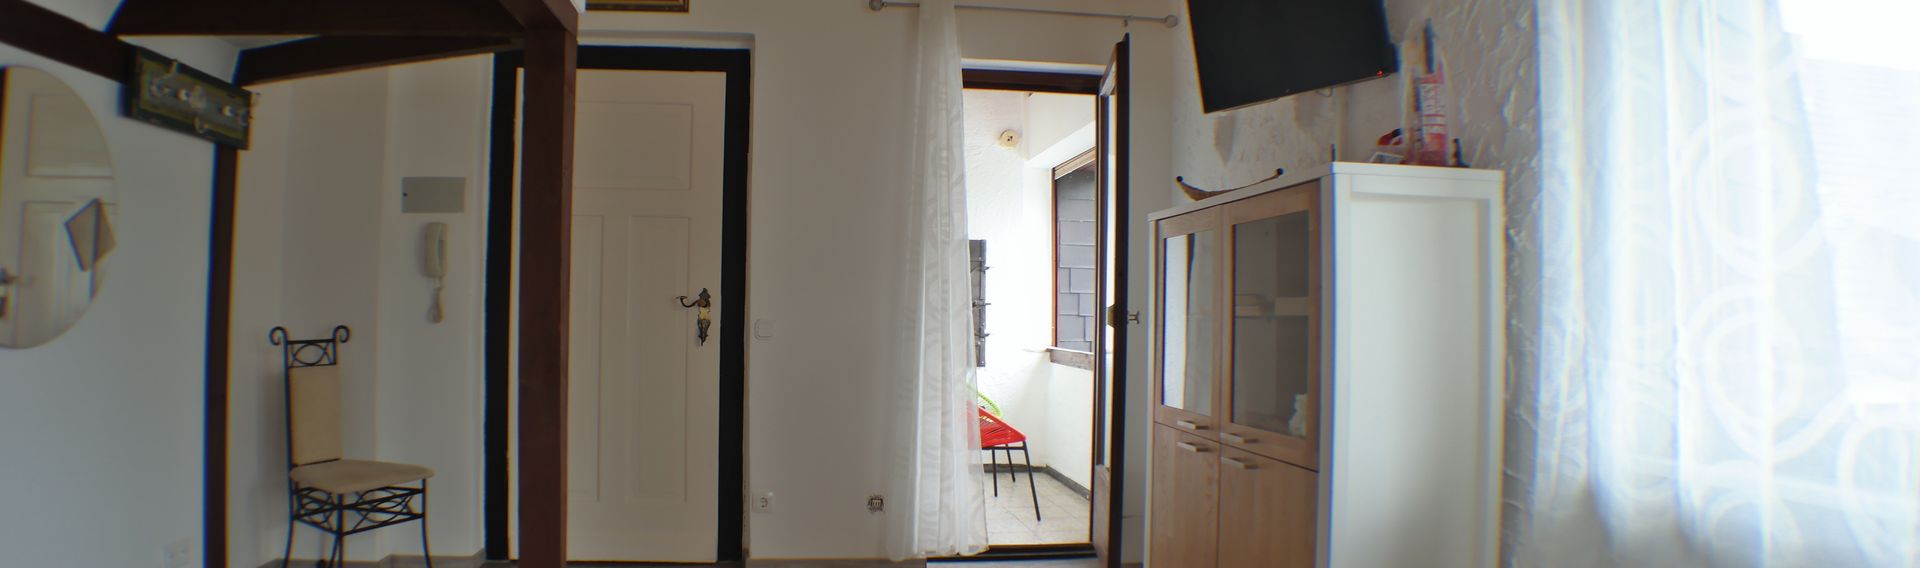 Ferien-Appartement Bad Hönningen